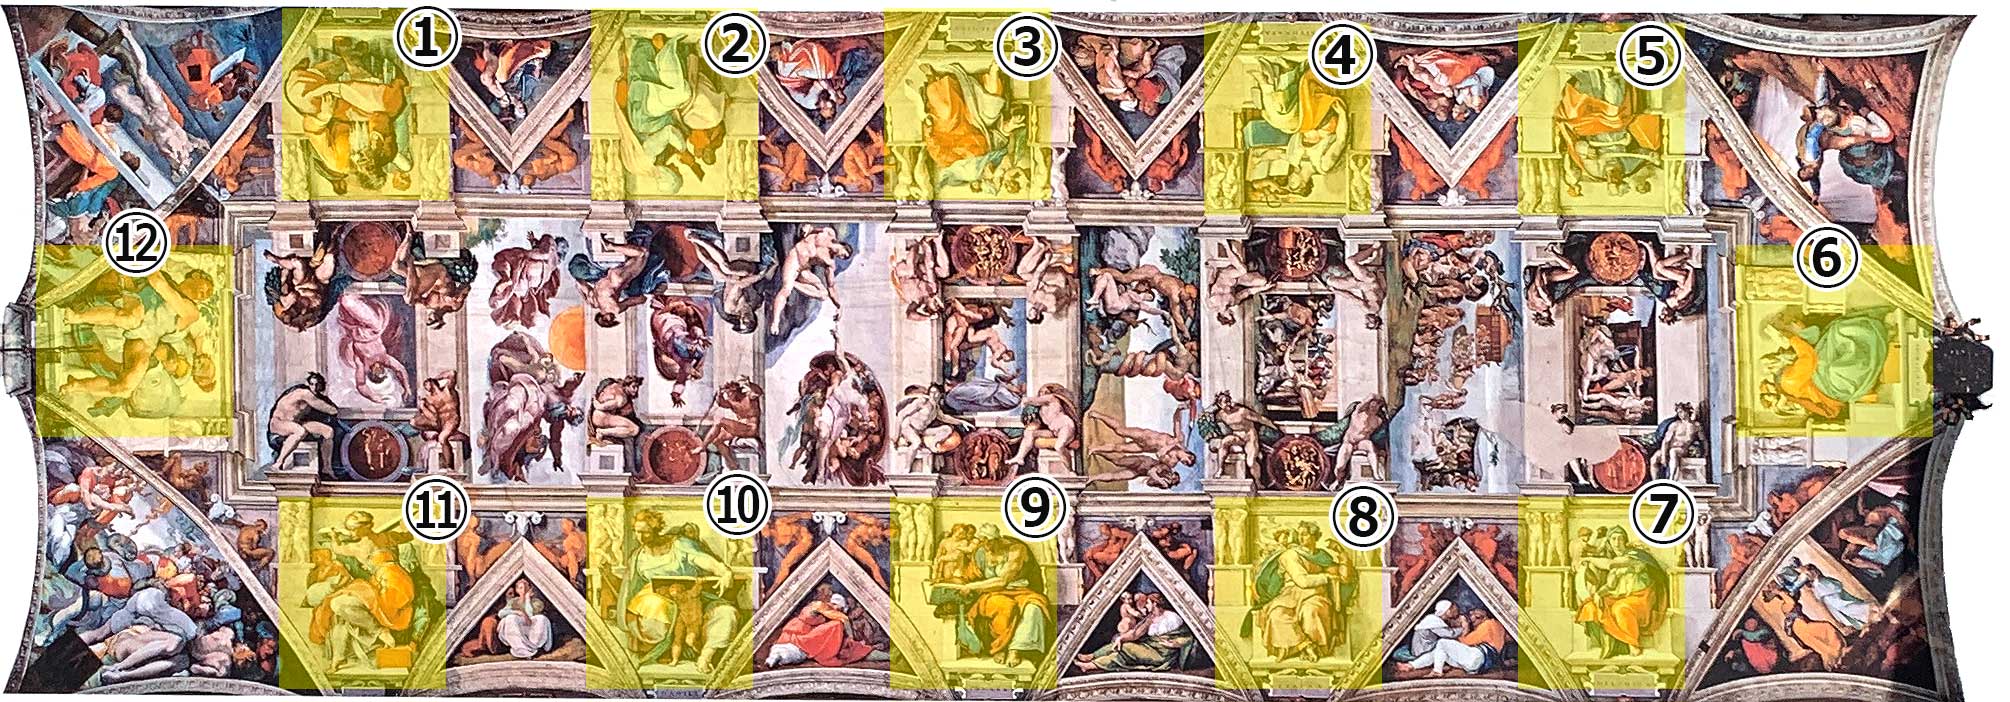 ミケランジェロ 天井画の説明画像